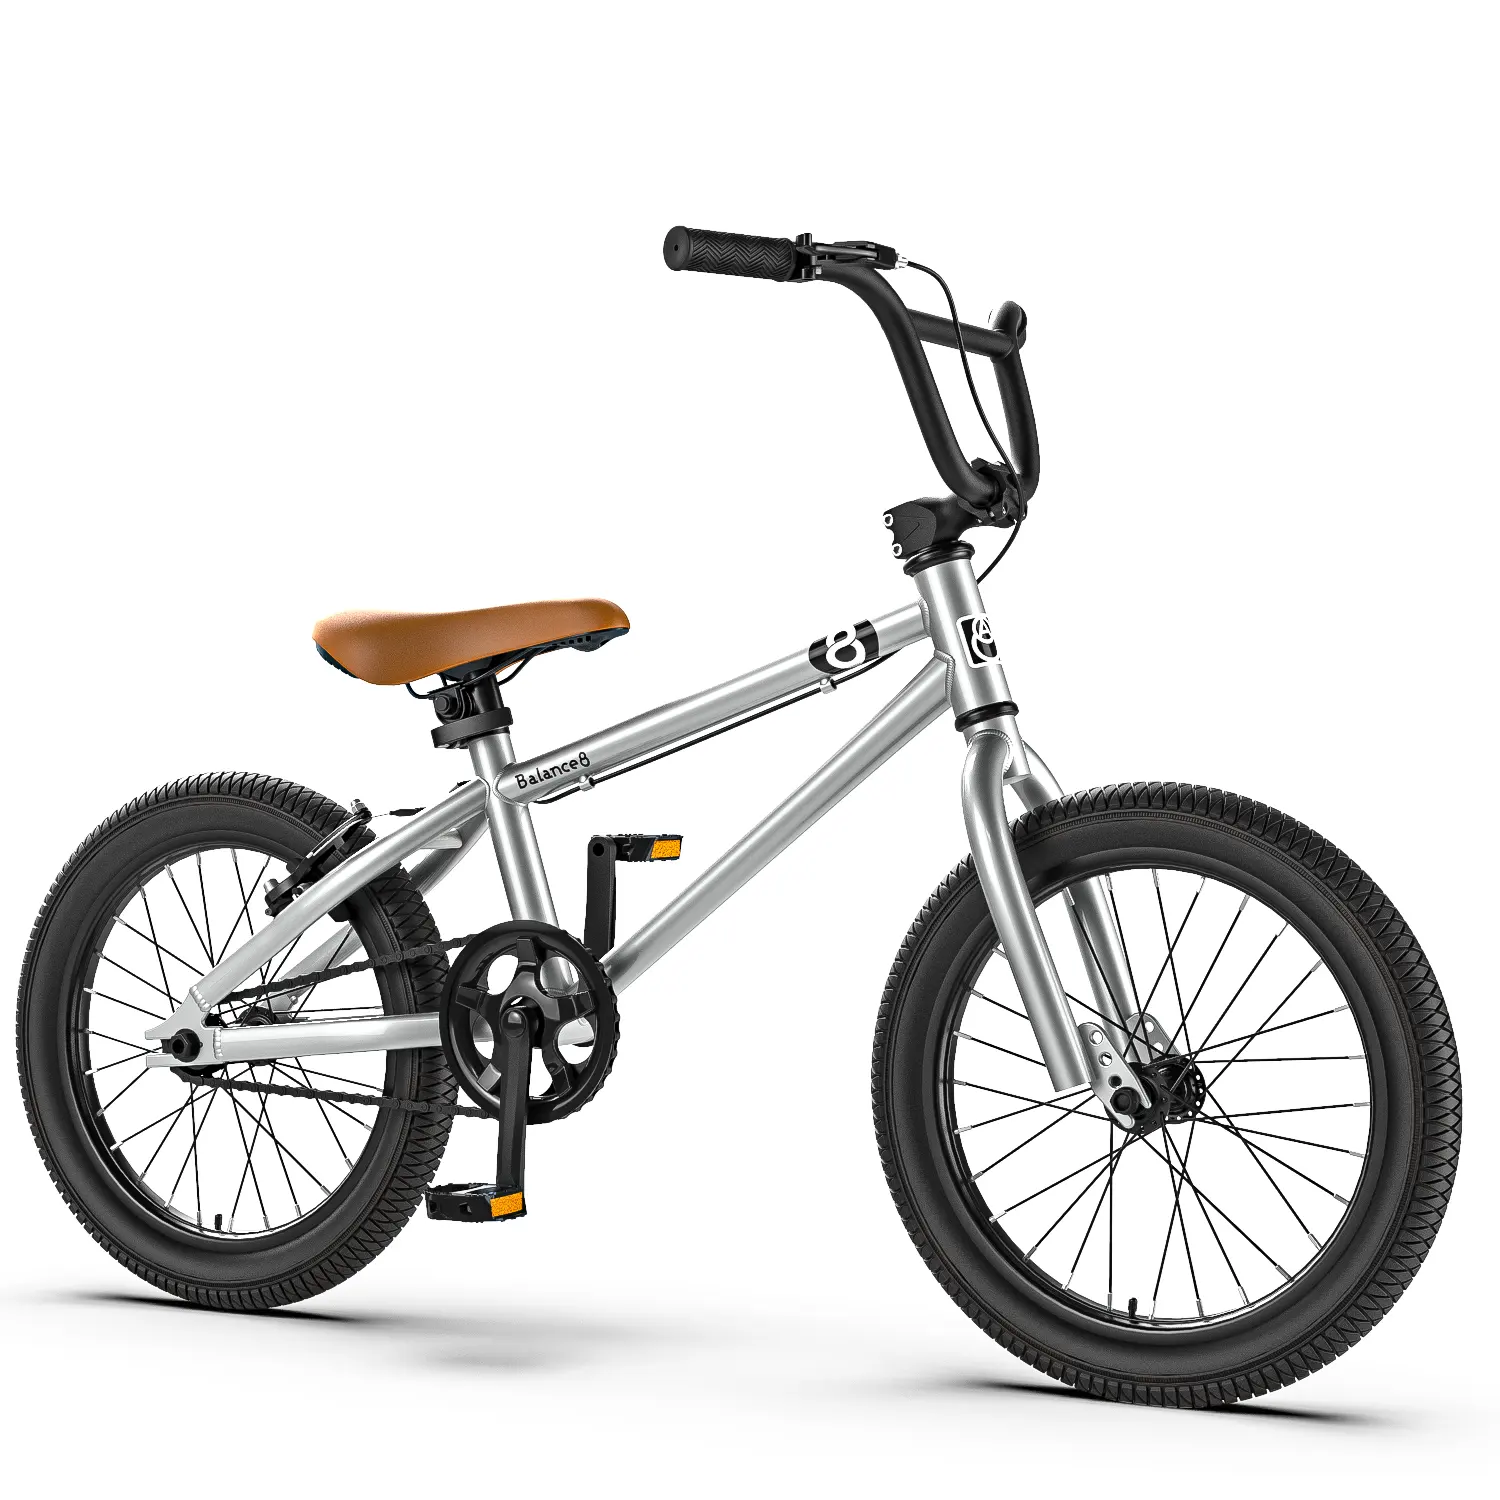 12 '14' 16 '18' 20 'nuovo Design bici per bambini/bicicletta per bambini prezzo basso per bambino/servizio oem bicicletta usata